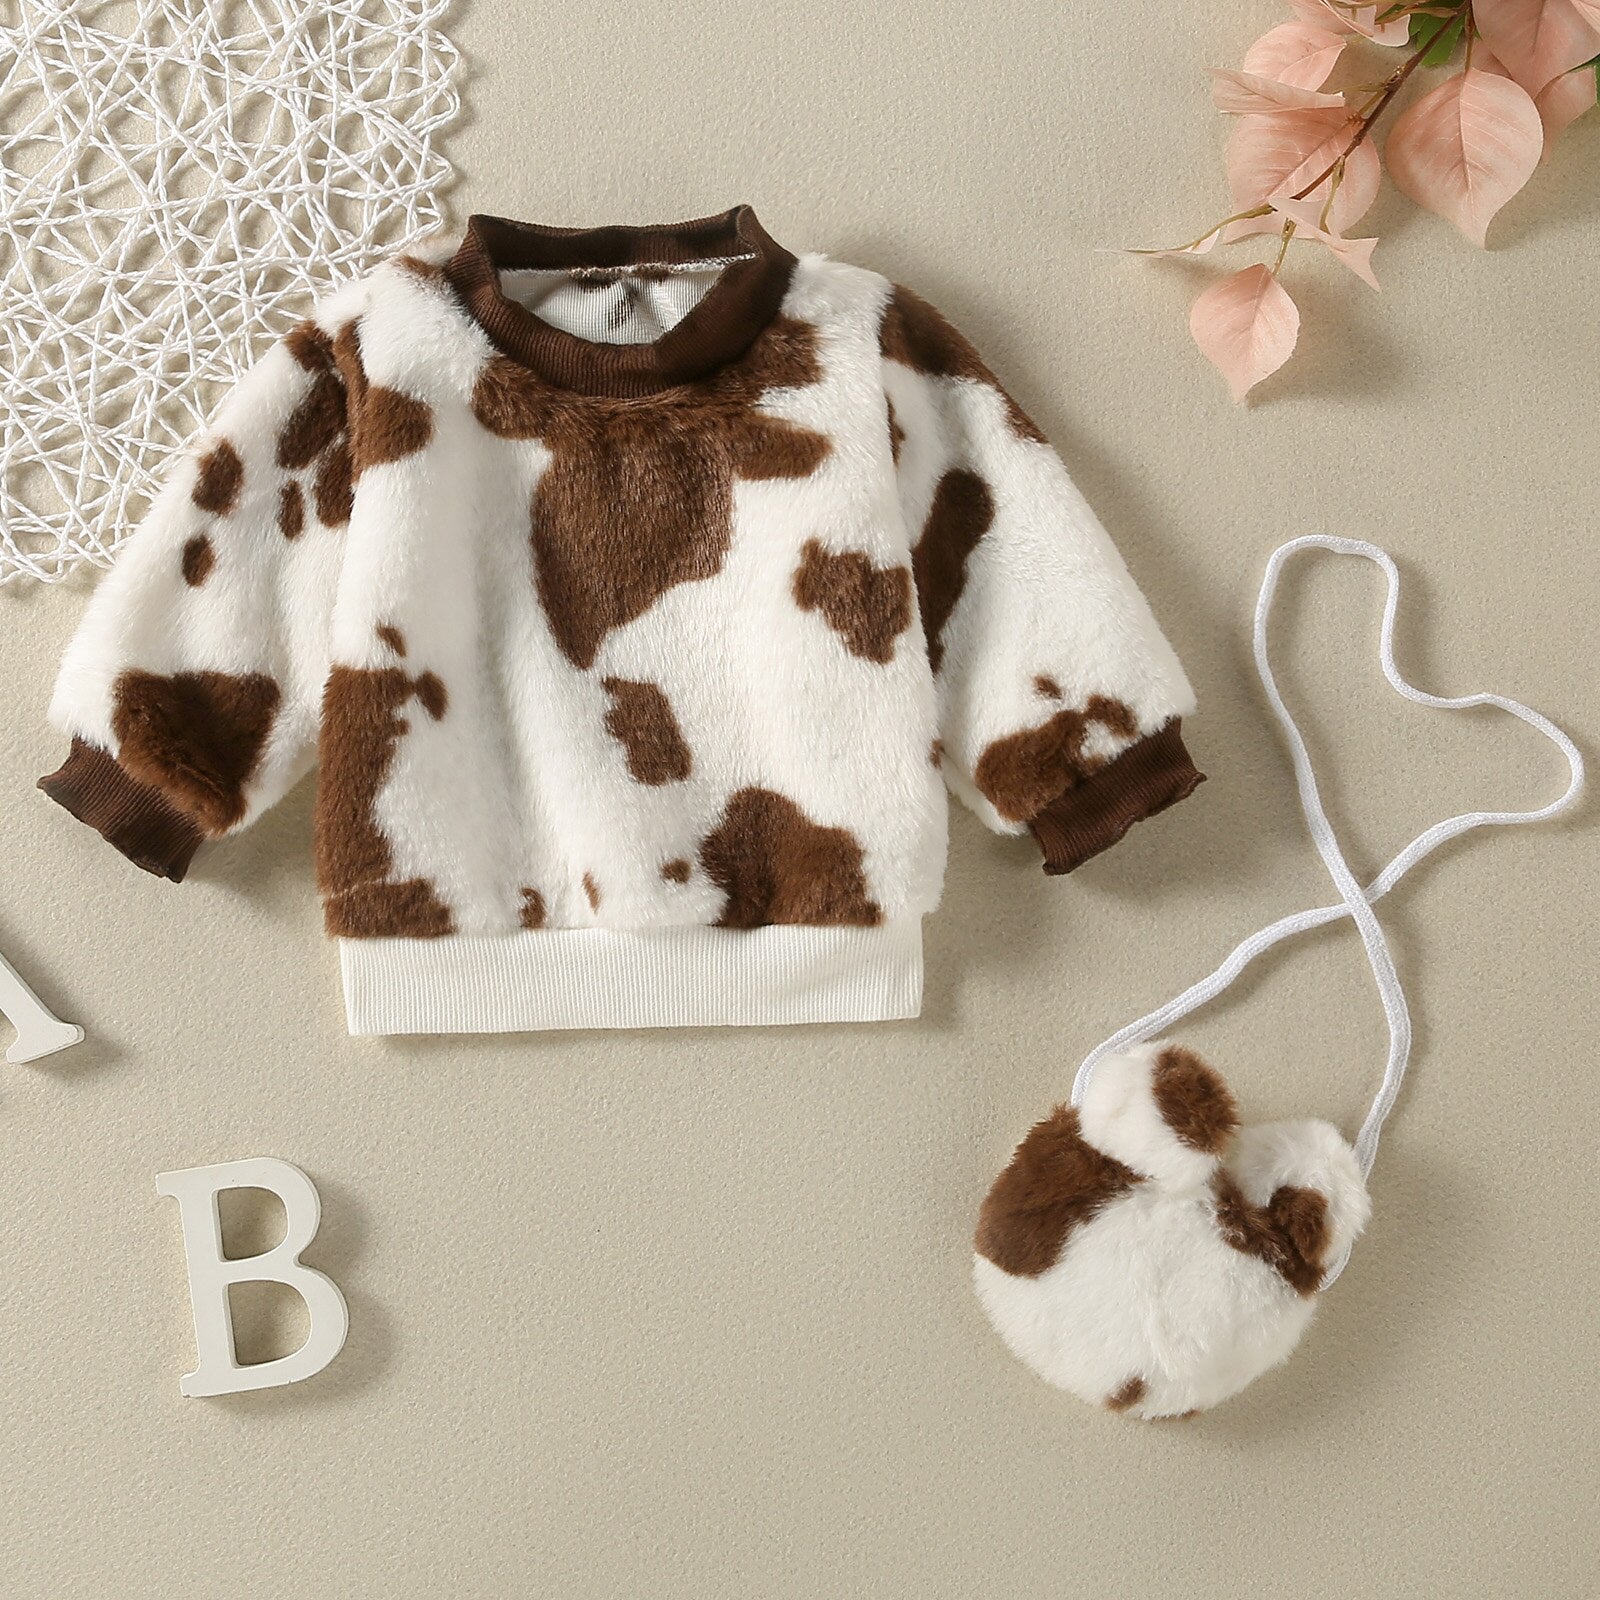 Blusa de Frio Infantil + Bolsinha Orelhinha blusa de frio Loja Click Certo Marrom 18-24 meses 